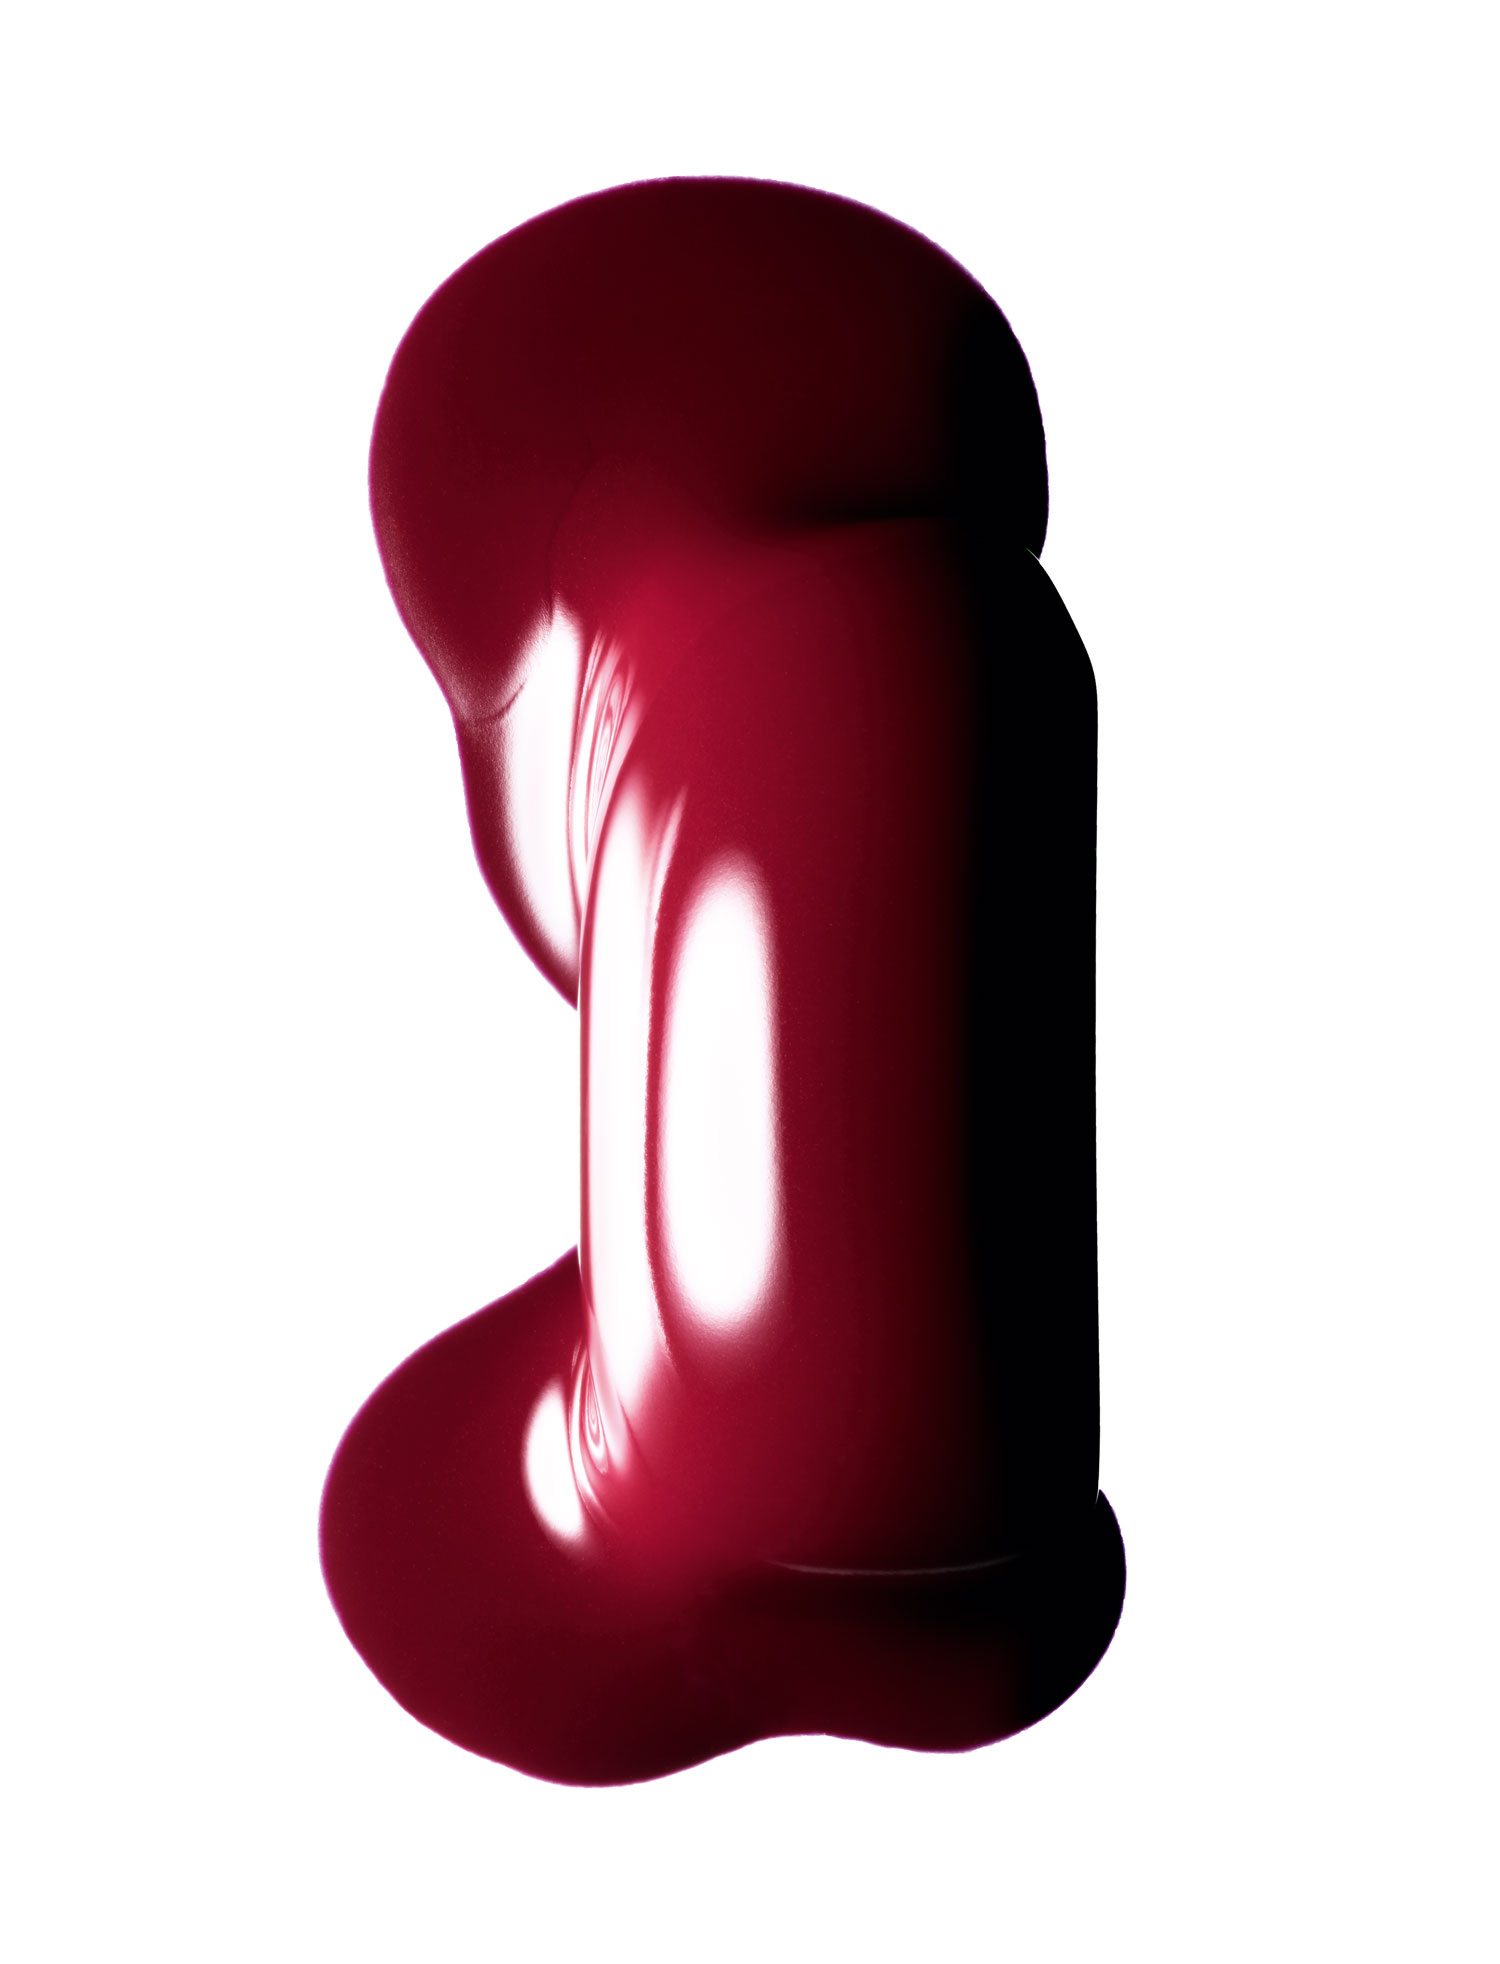 “Lipstick”, les rouges à lèvres mats photographiés par Guido Mocafico